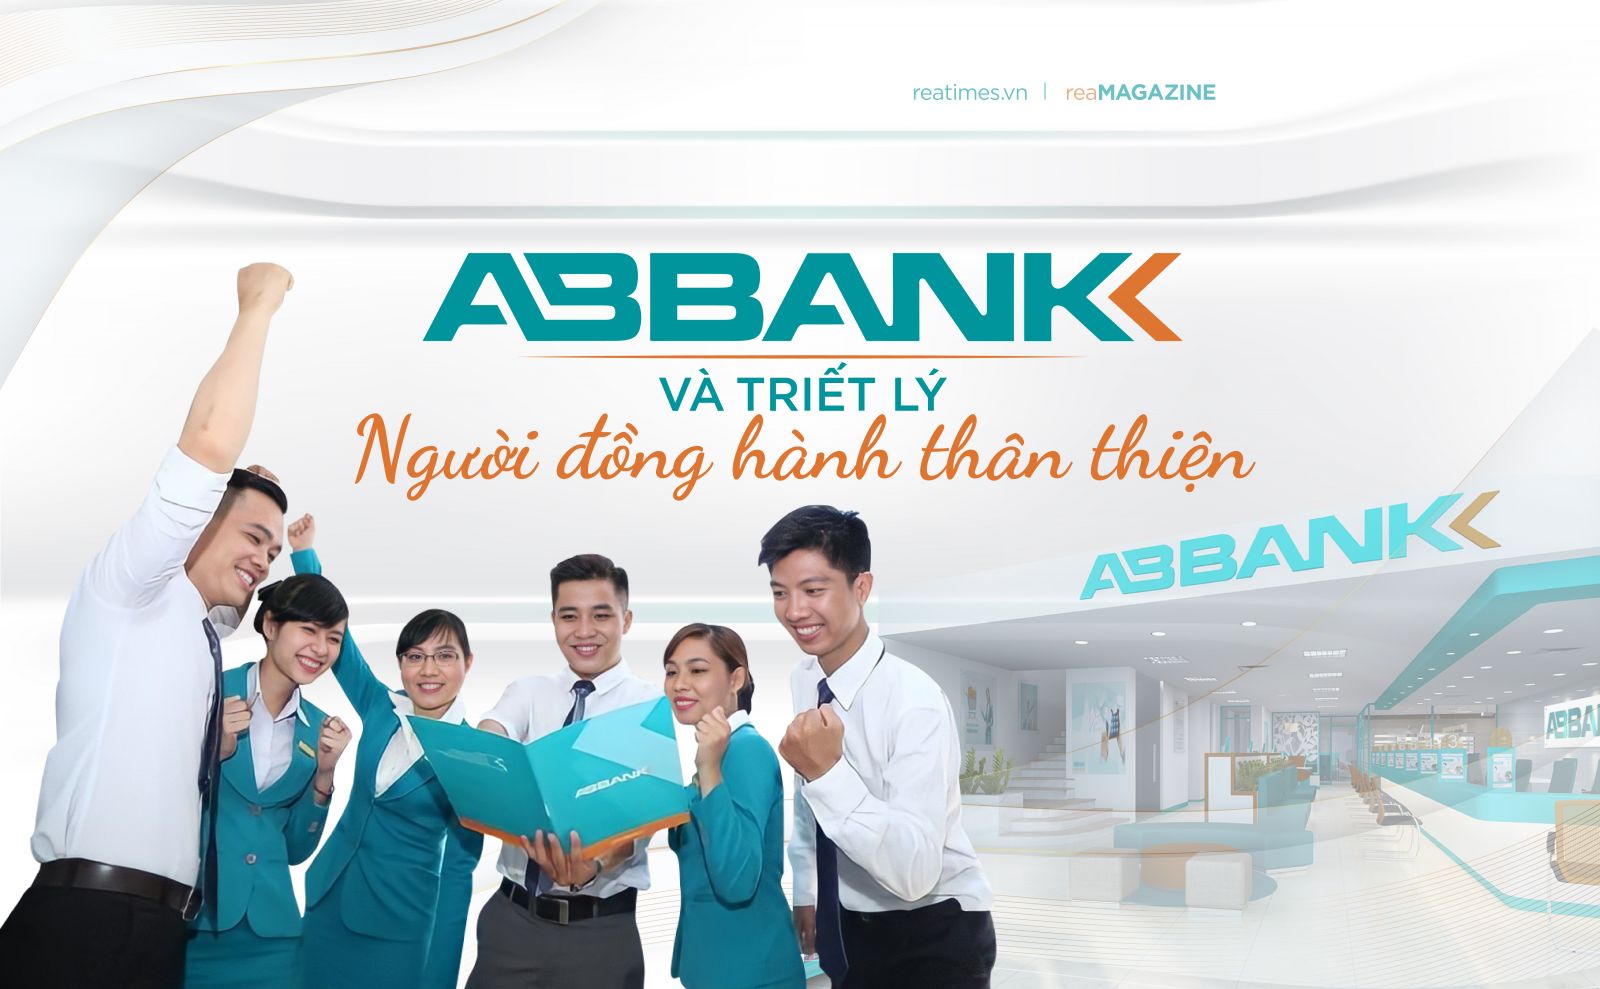 ABBank và triết lý Người đồng hành thân thiện